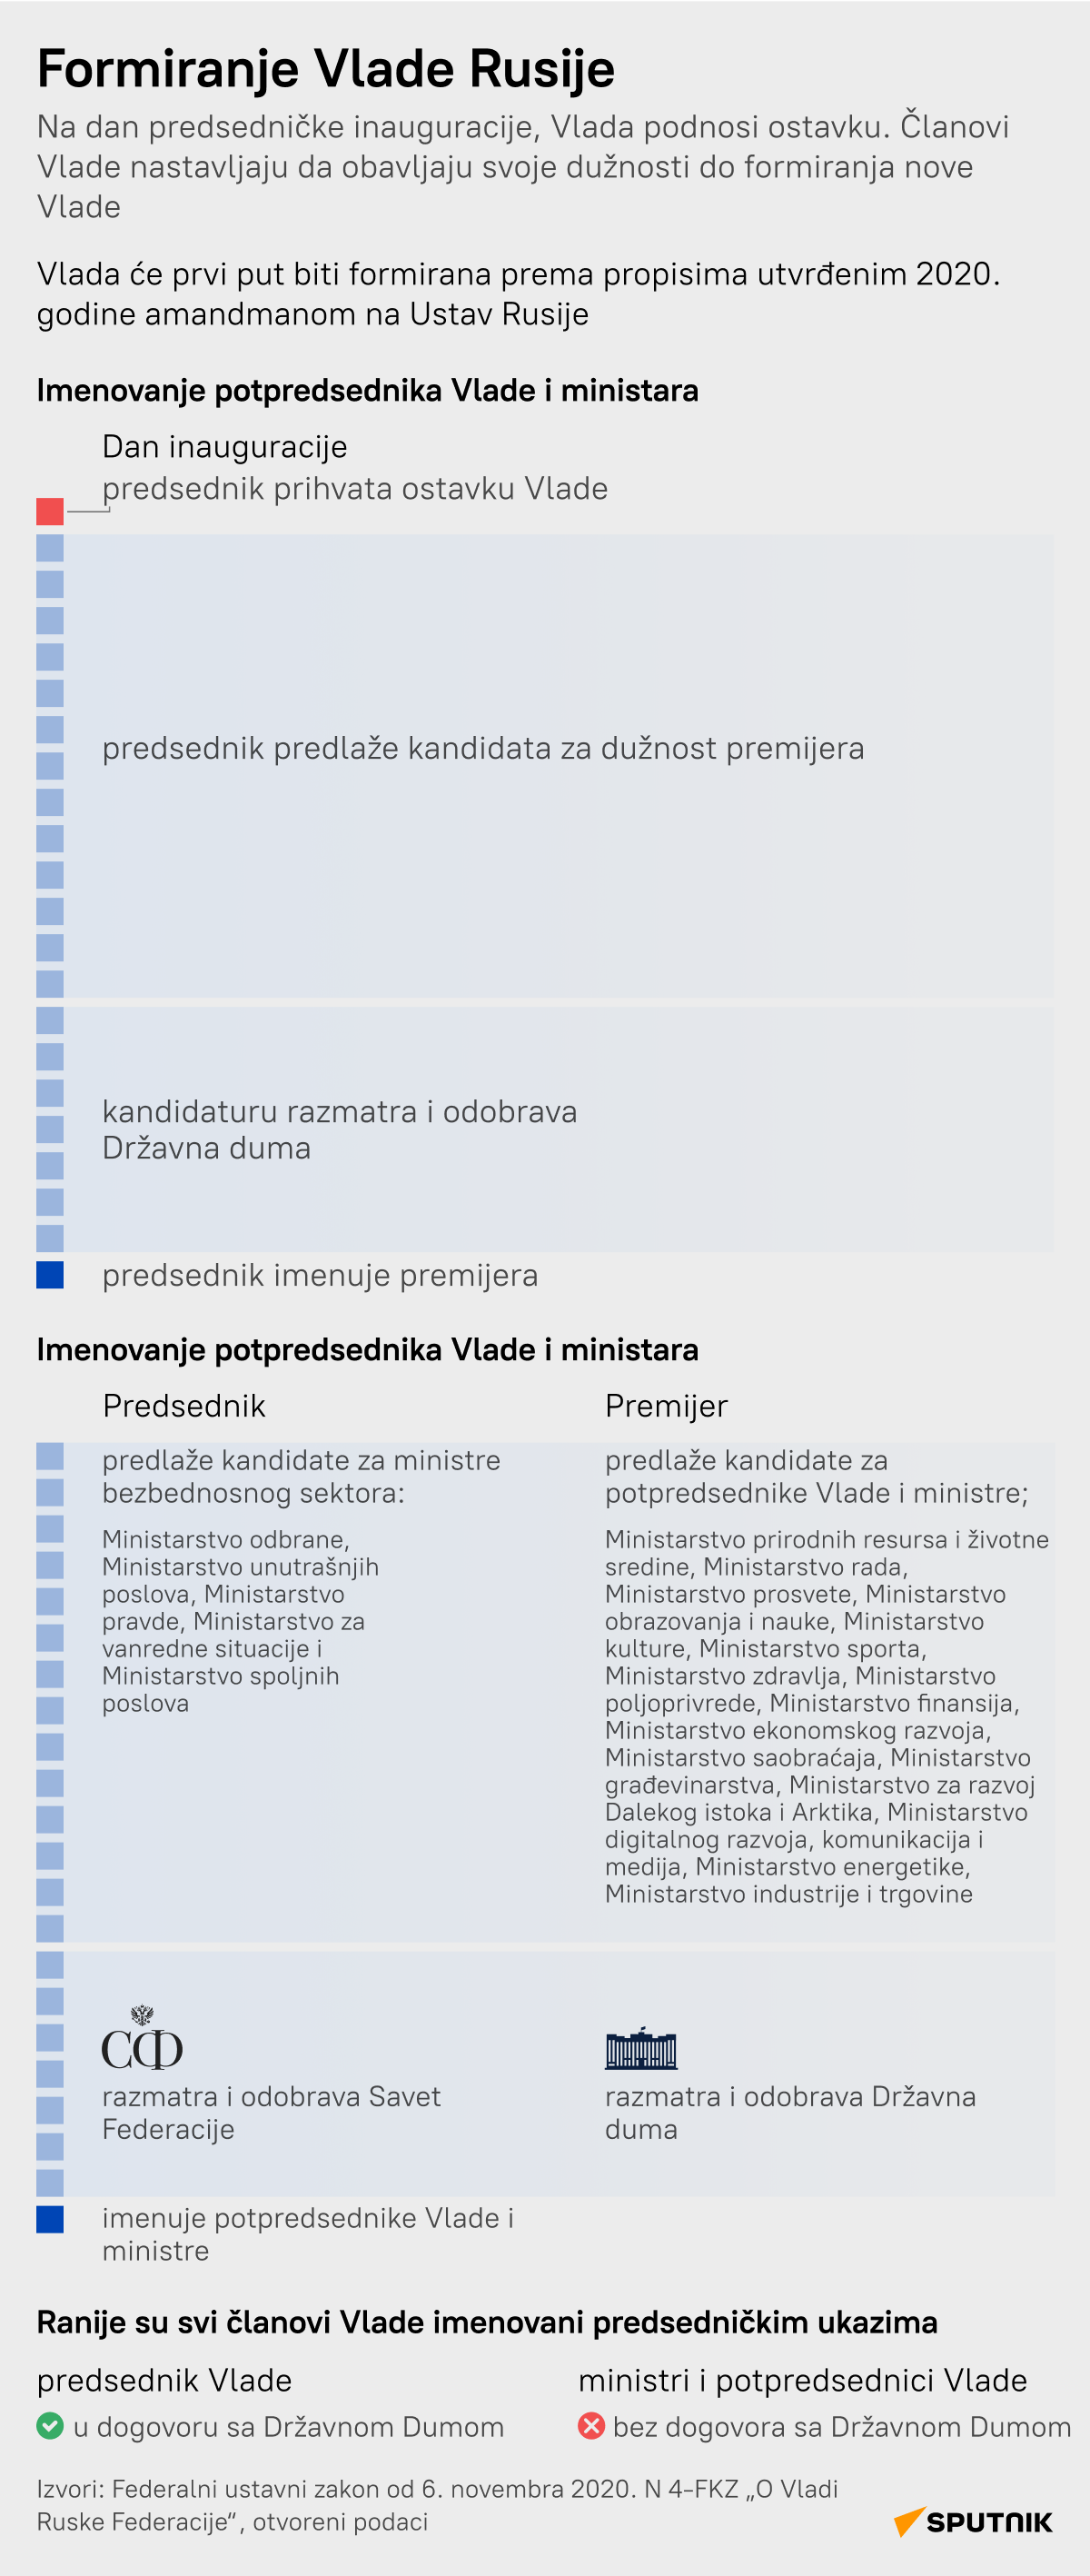 Formiranje vlade Ruske Federacije - Sputnik Srbija